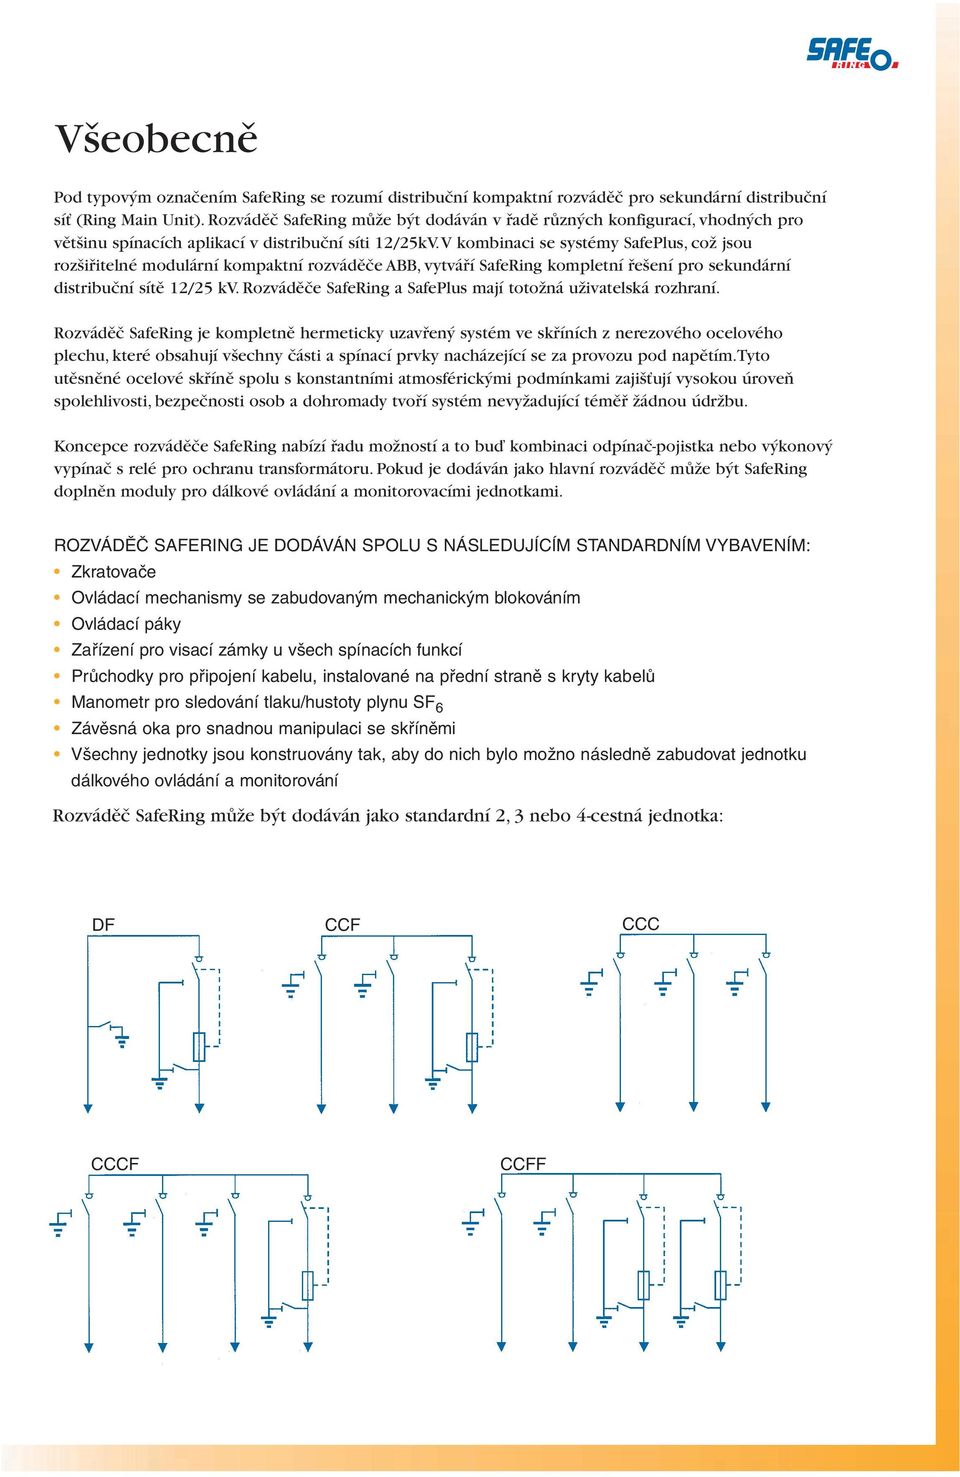 V kombinaci se systémy SafePlus, coï jsou roz ifiitelné modulární kompaktní rozvádûãe ABB, vytváfií SafeRing kompletní fie ení pro sekundární distribuãní sítû 12/25 kv.